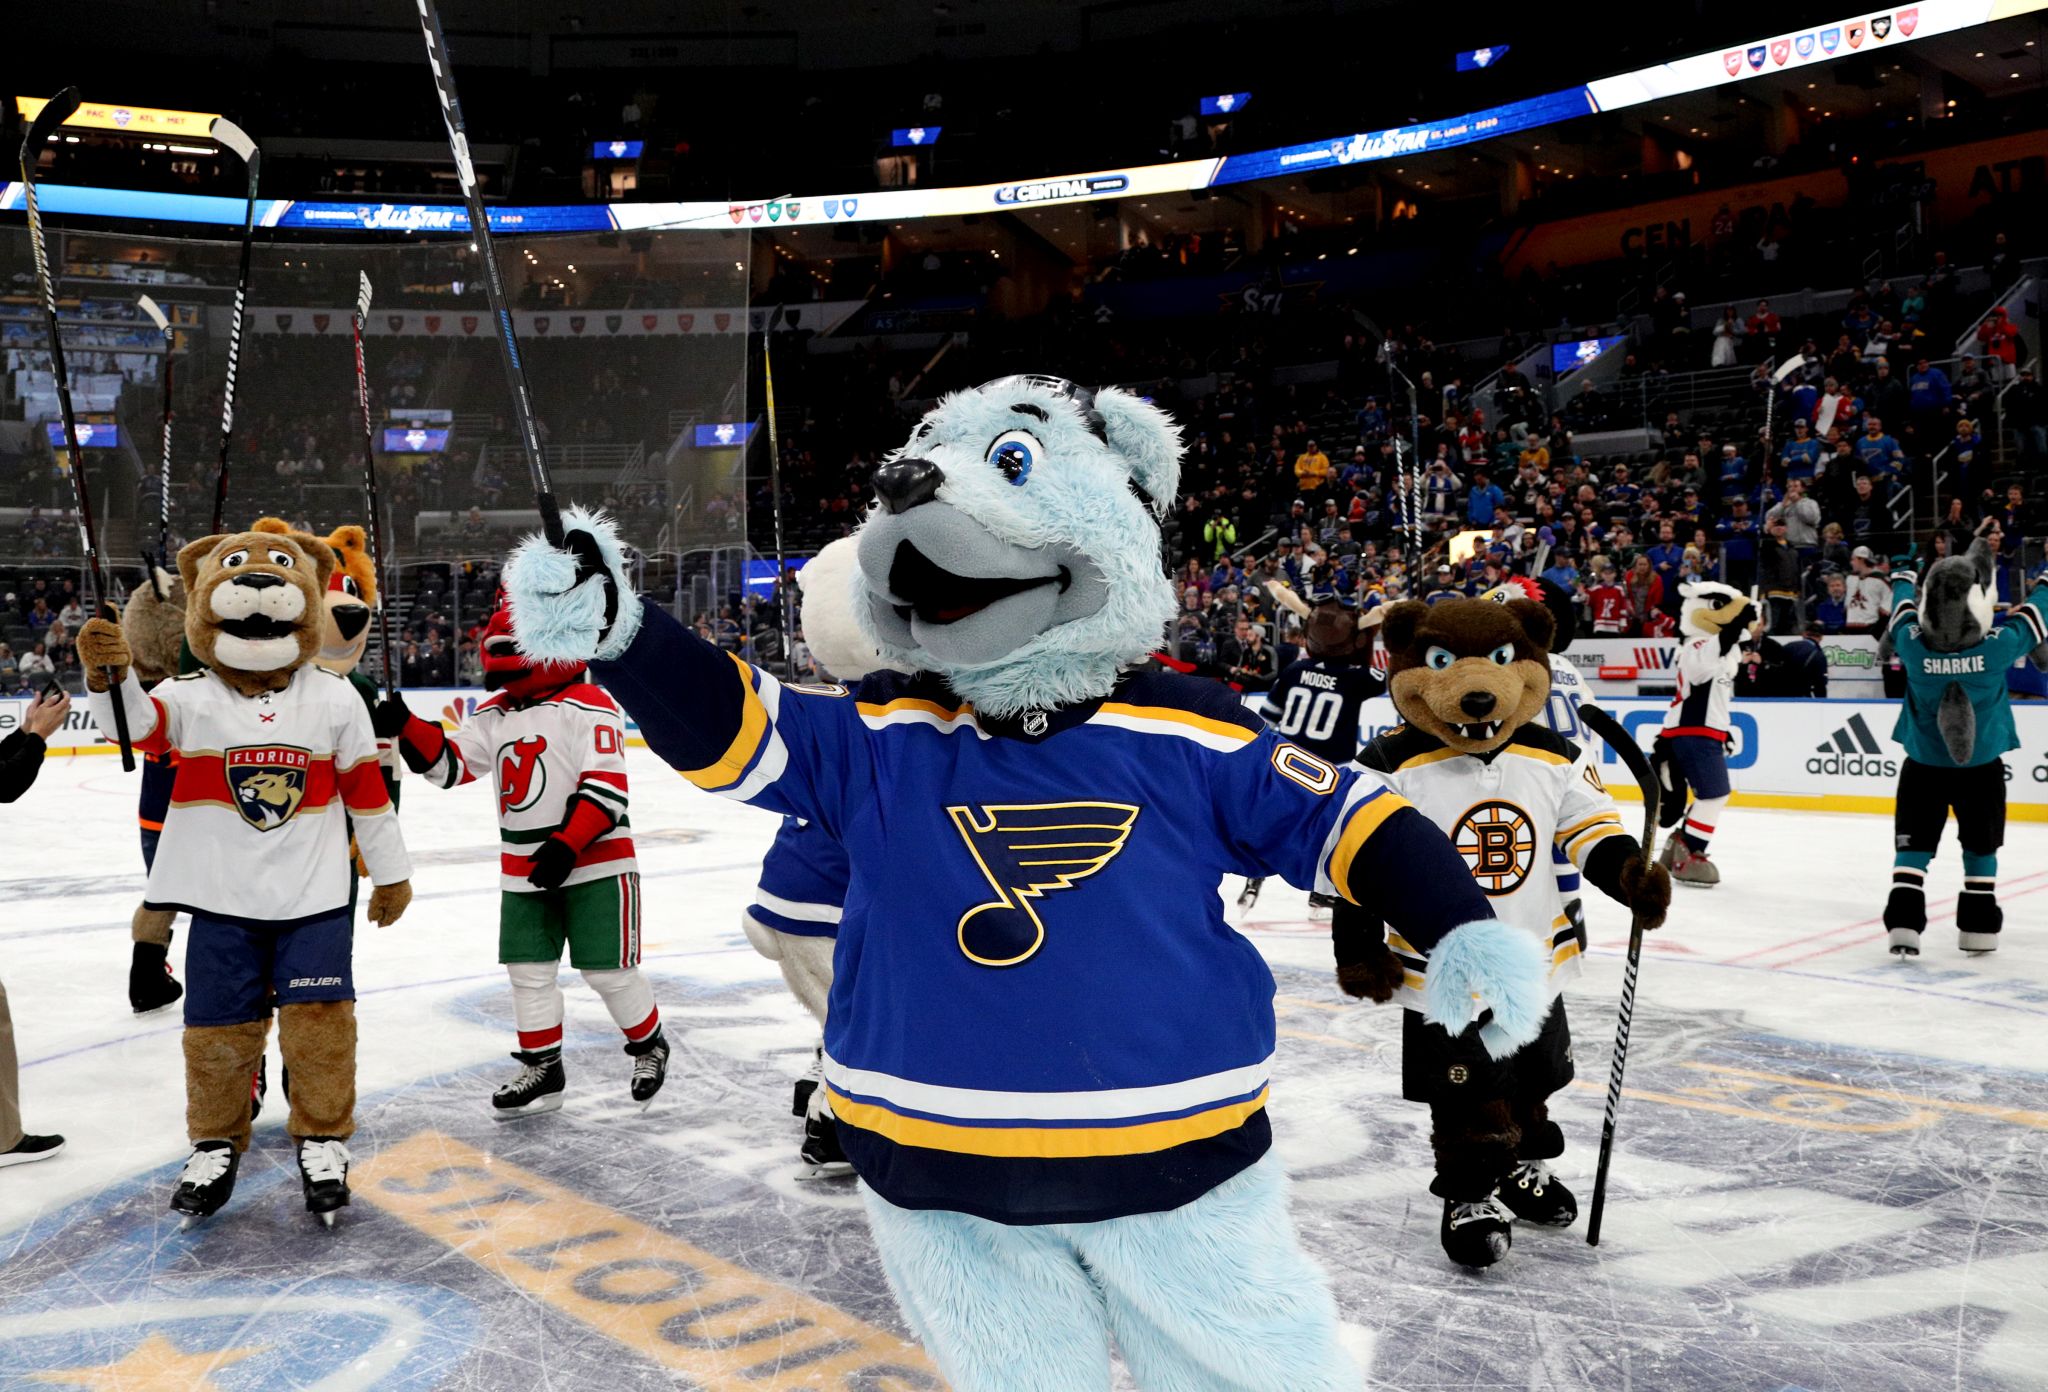 Louie Mascot Trapper Hat NHL Ice Hockey St. Louis Blues Sports Fan Gear,  Adult One Size